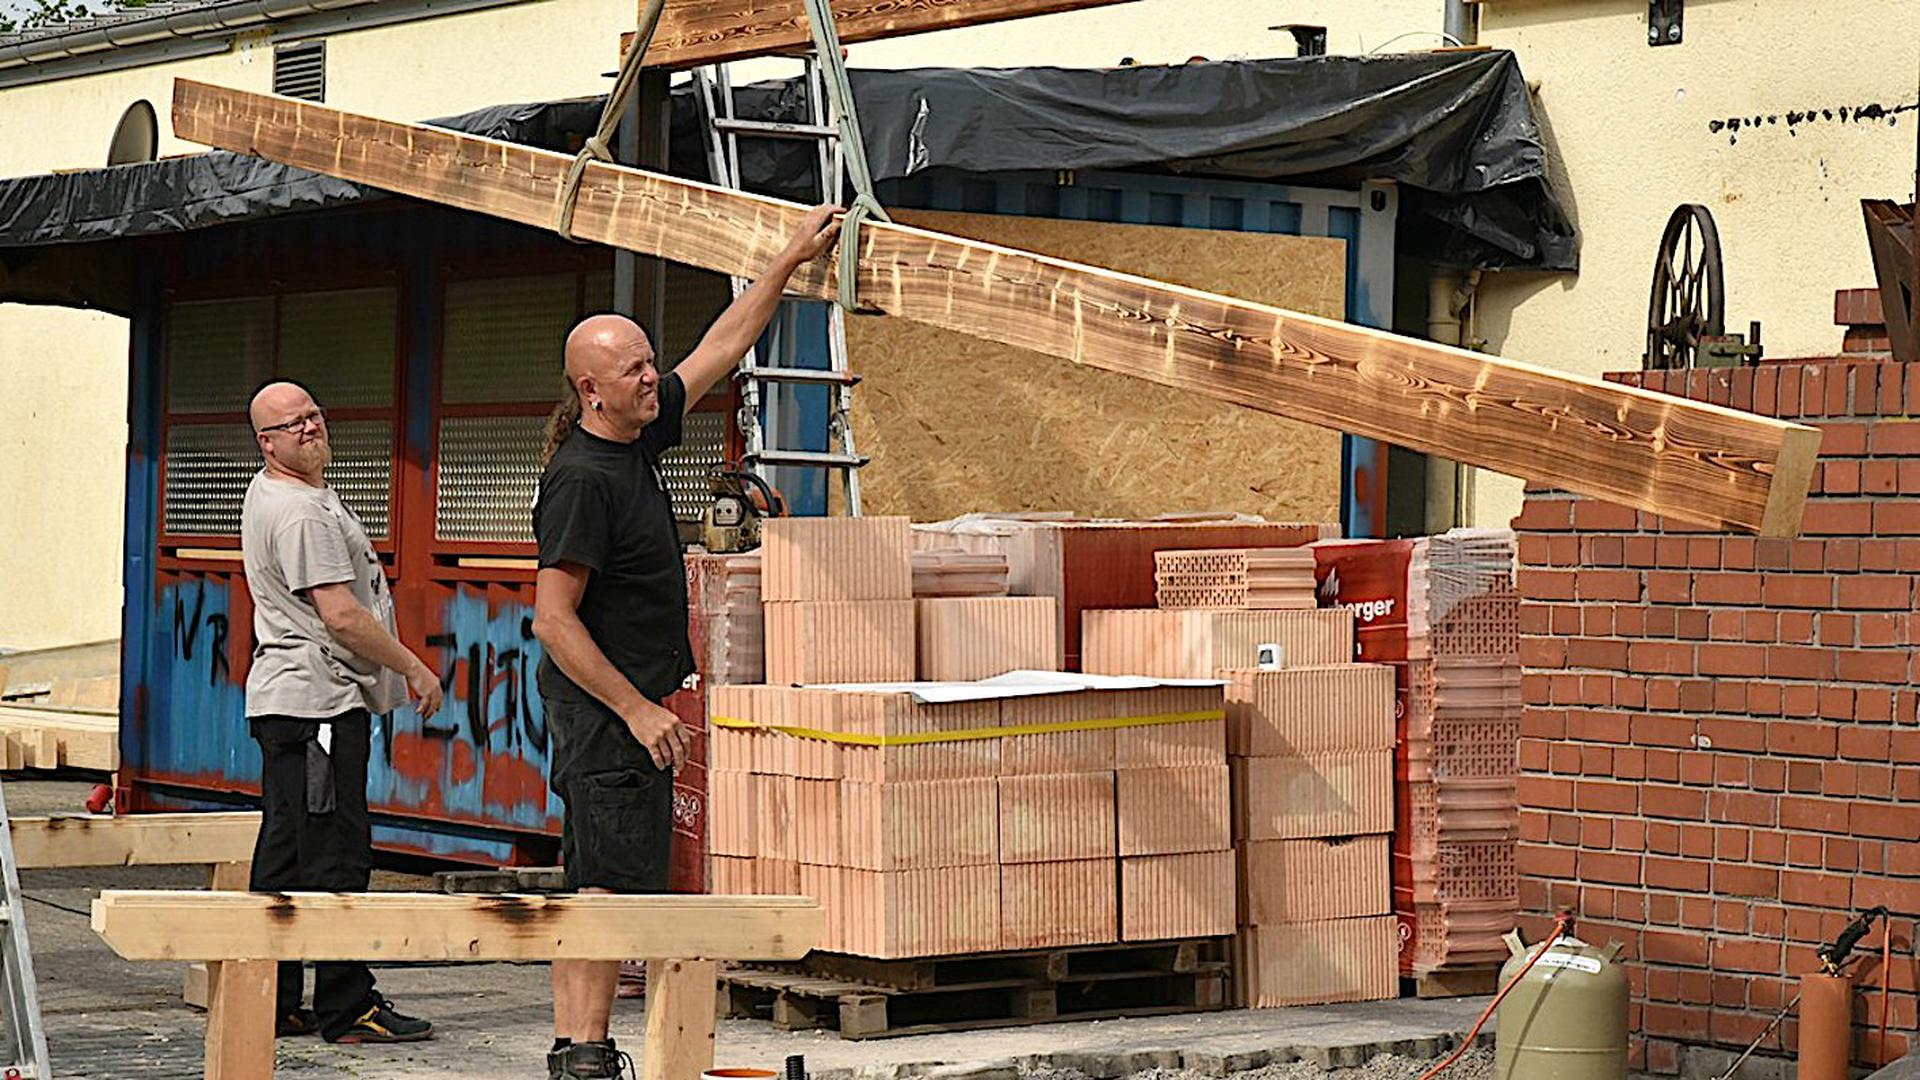 Zwei Helfer beteiligen sich am Umbau der Fabrik in Bruchsal. Ein langes Stück Holz wird gehalten.